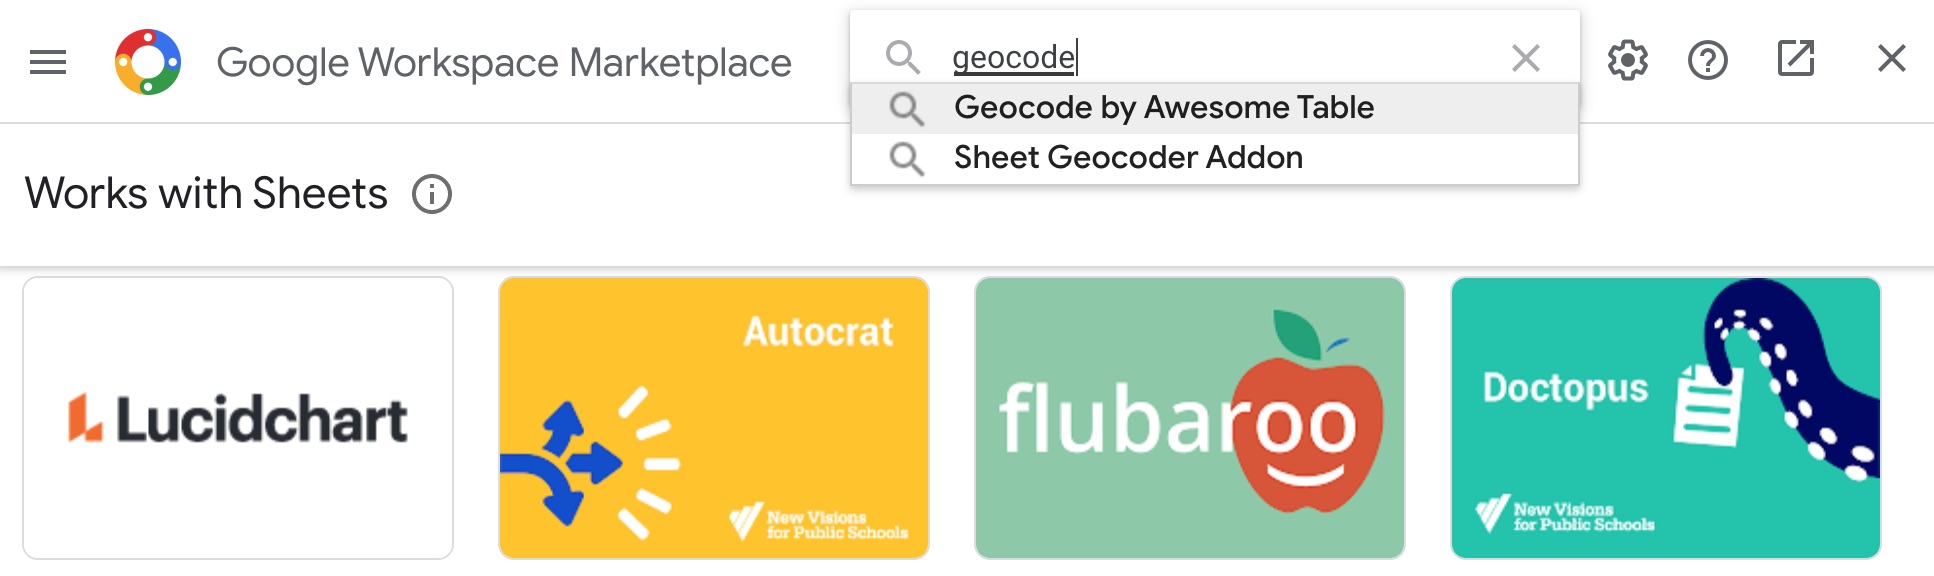 Hình 3: Tìm Add On tên là Geocode by Awesome Table